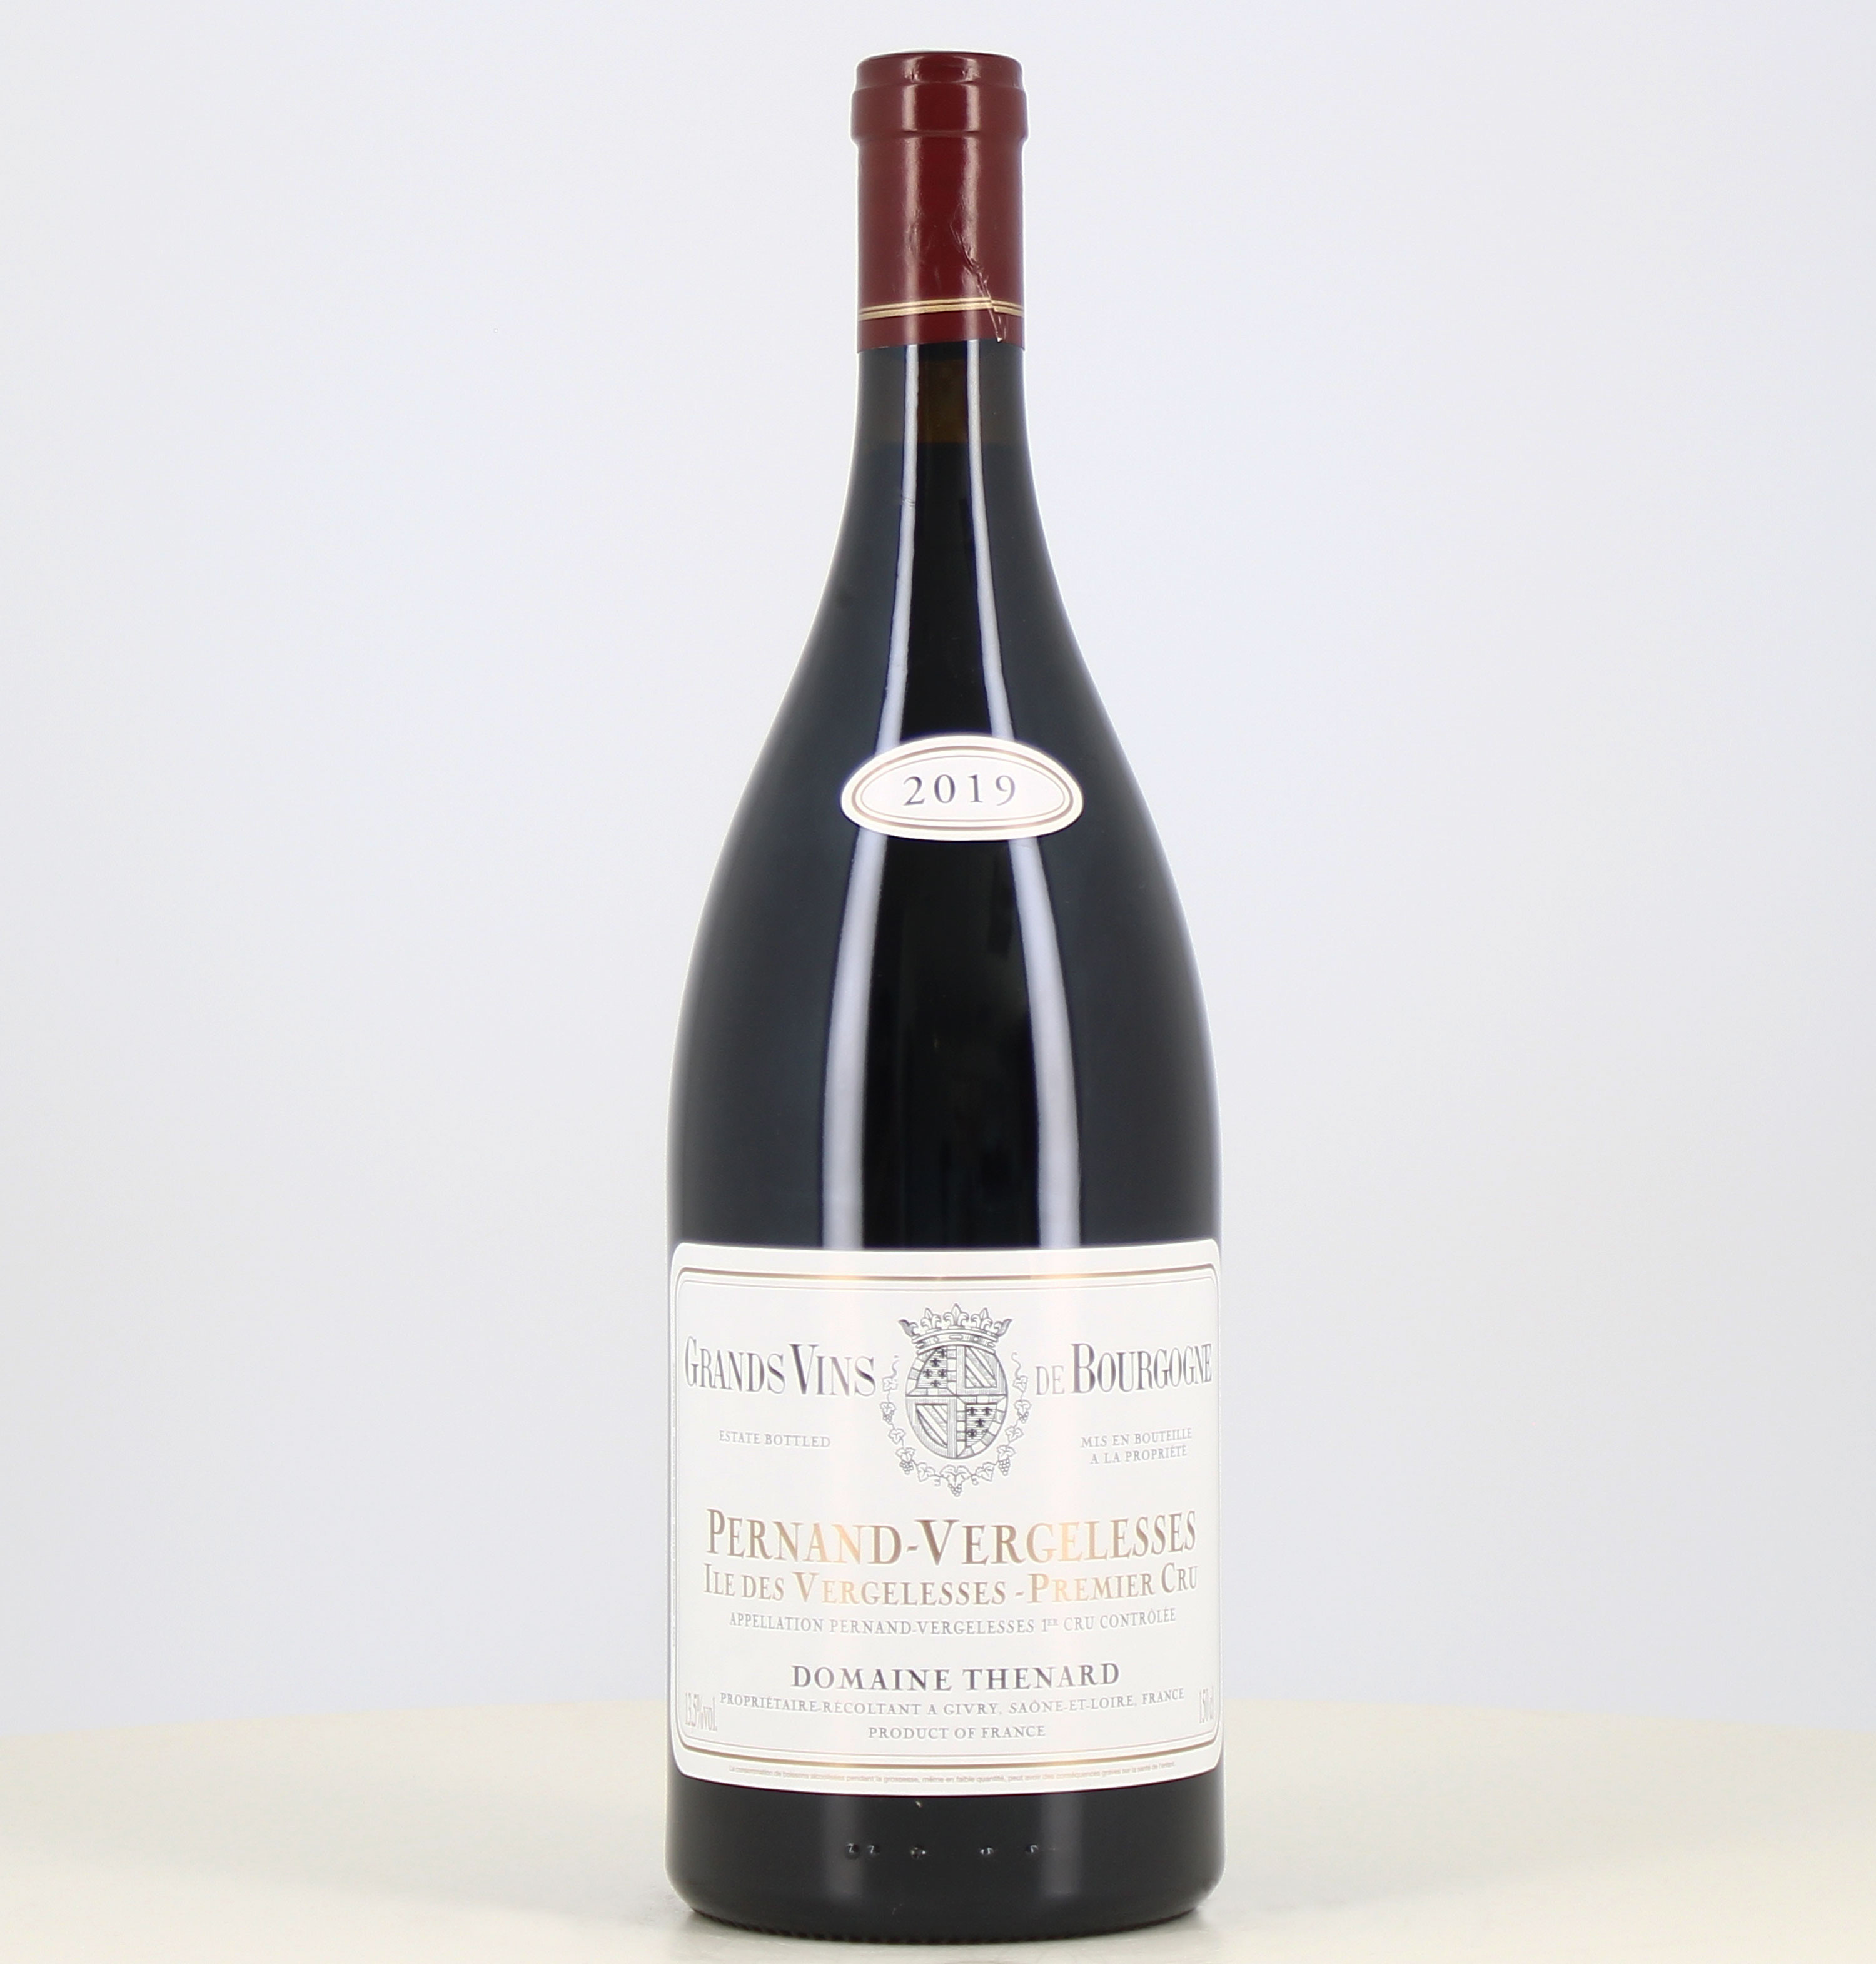 Magnum di vino bianco Pernand-Vergelesse 1er cru Île des Vergelesse domaine Thenard 2019 